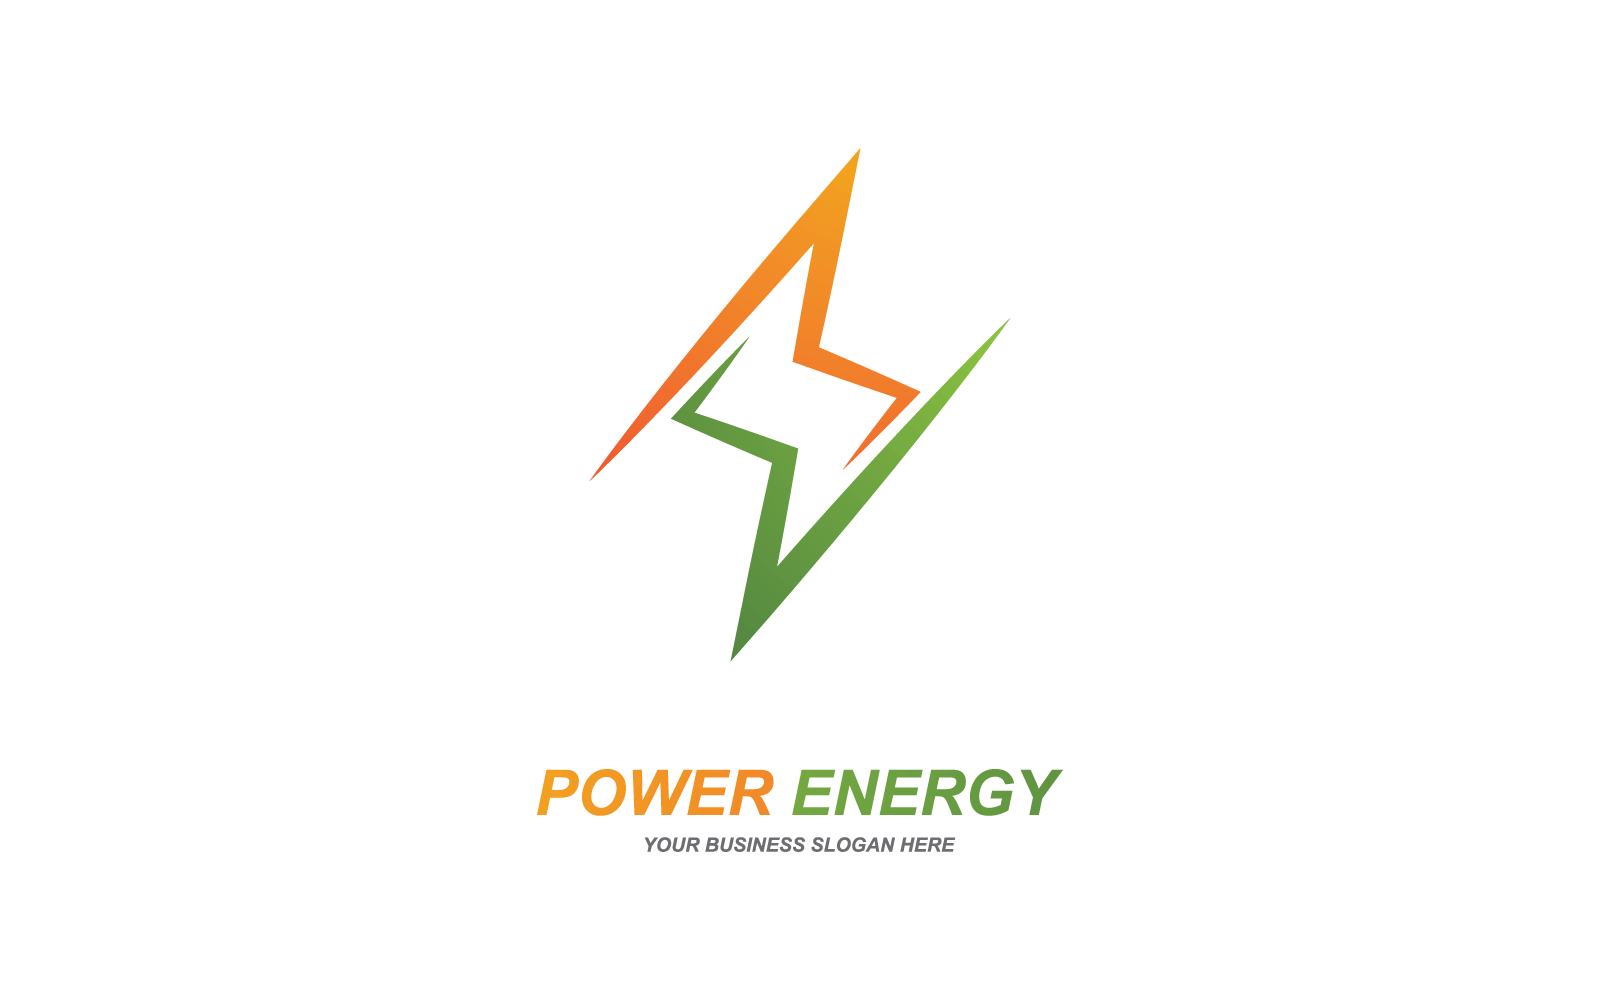 Power lightning power energy logo flat design Logo Template